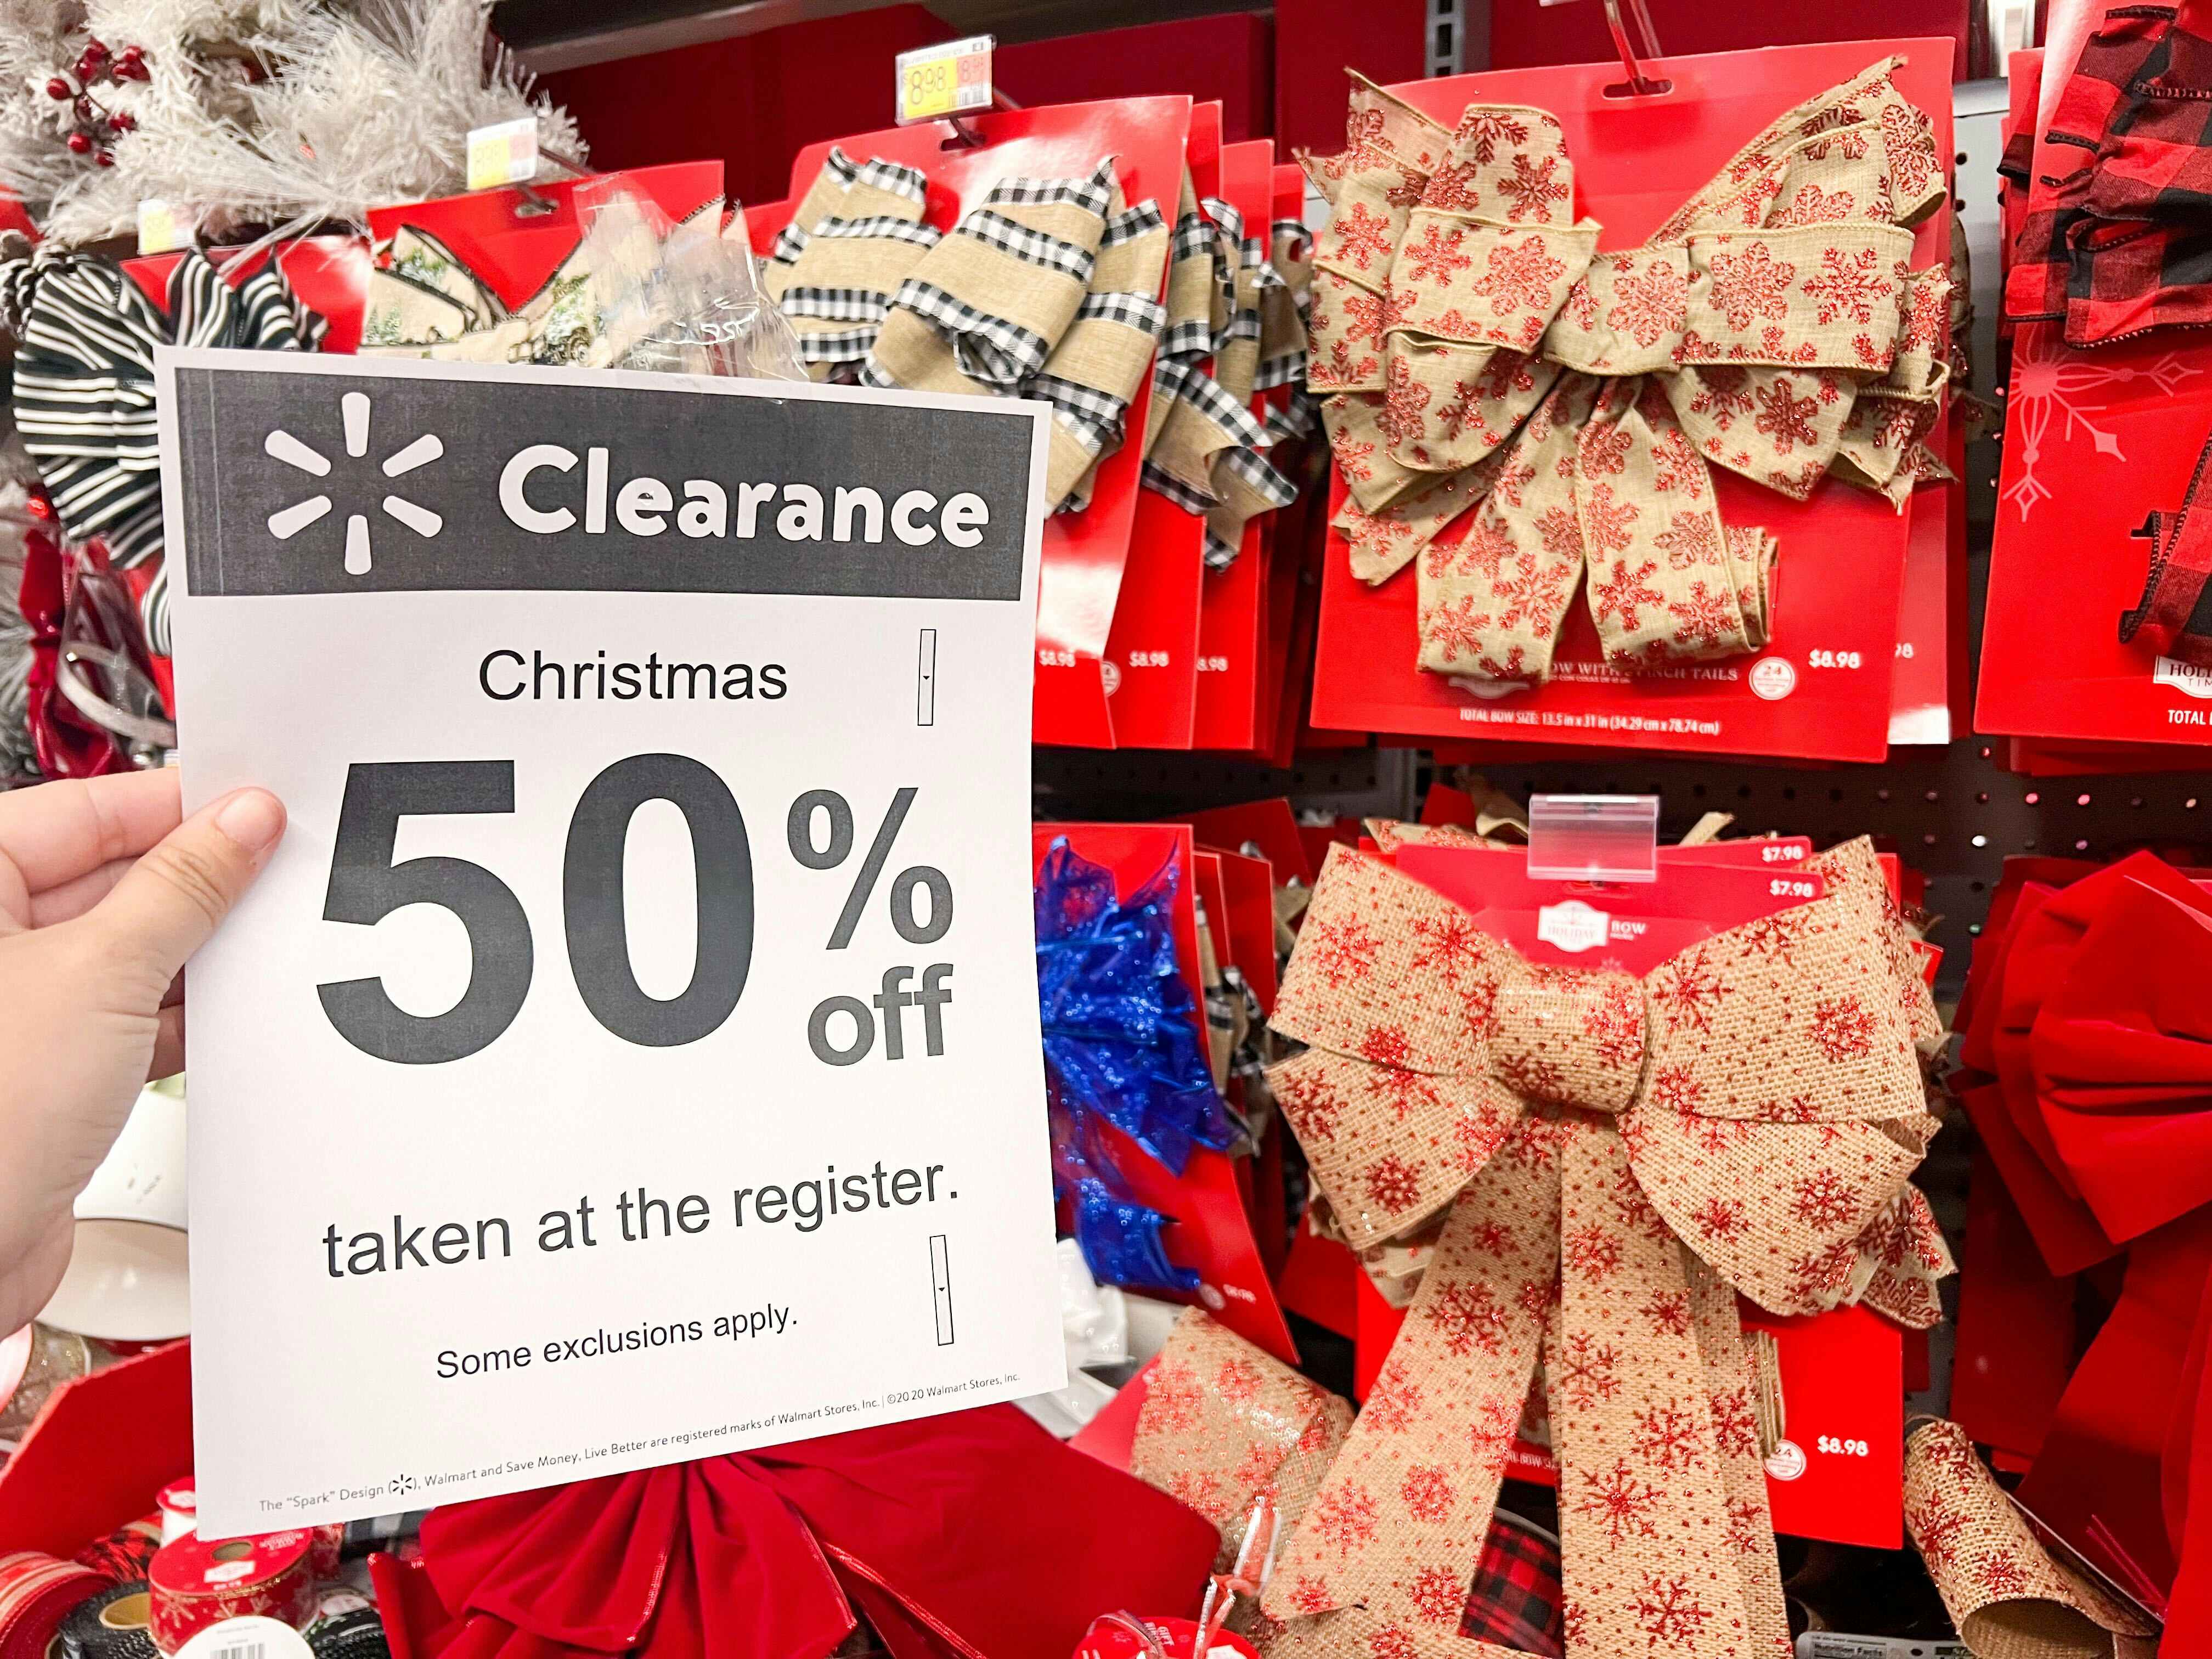 Macys Clearance] $1.96 For 10 Types of Women's Underwear 